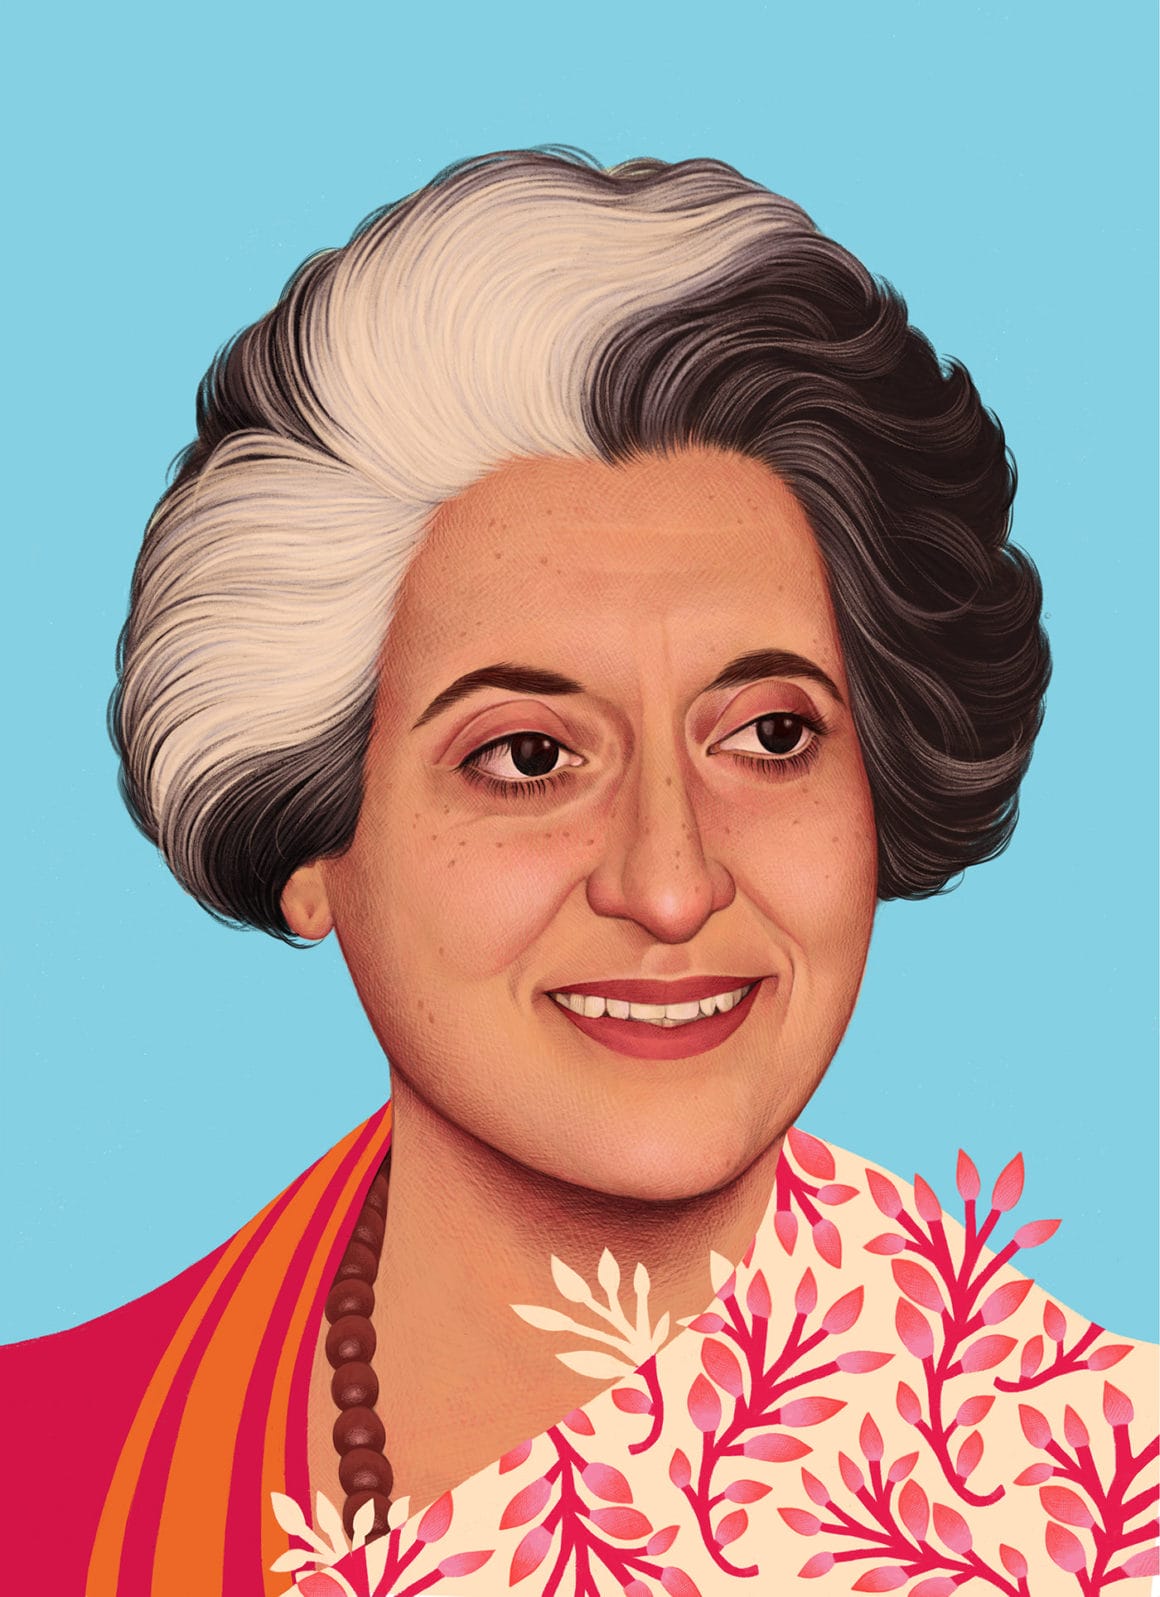 Portrait de Indira Ghandi sur fond bleu, elle sourit et porte une tenue qui est, du côté droit, recouvert de branches fleuries.